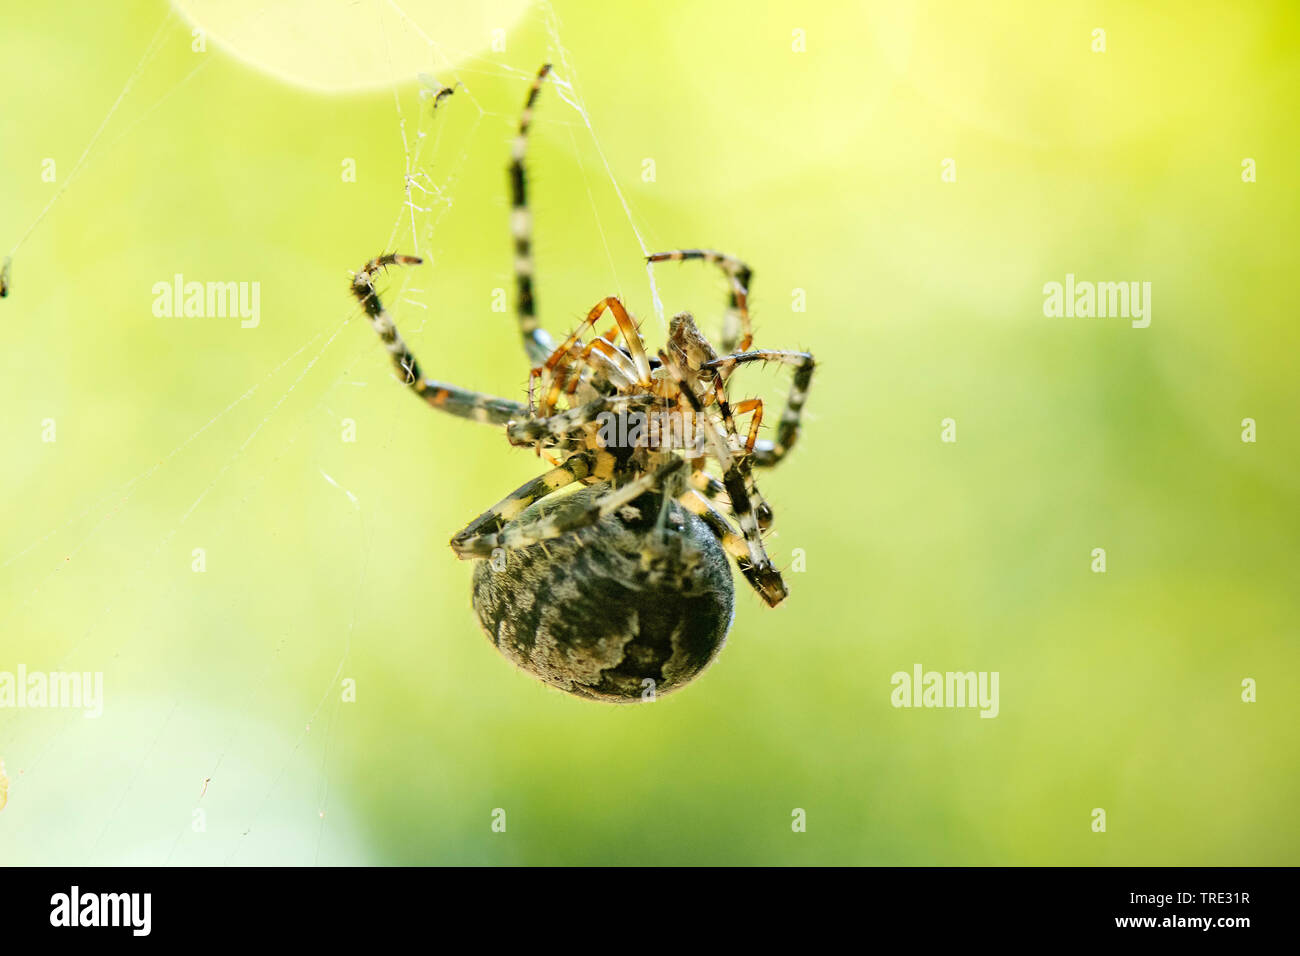 Croce orbweaver, giardino europeo spider, cross spider (Araneus diadematus) di accoppiamento di ragni, in Germania, in Renania settentrionale-Vestfalia Foto Stock